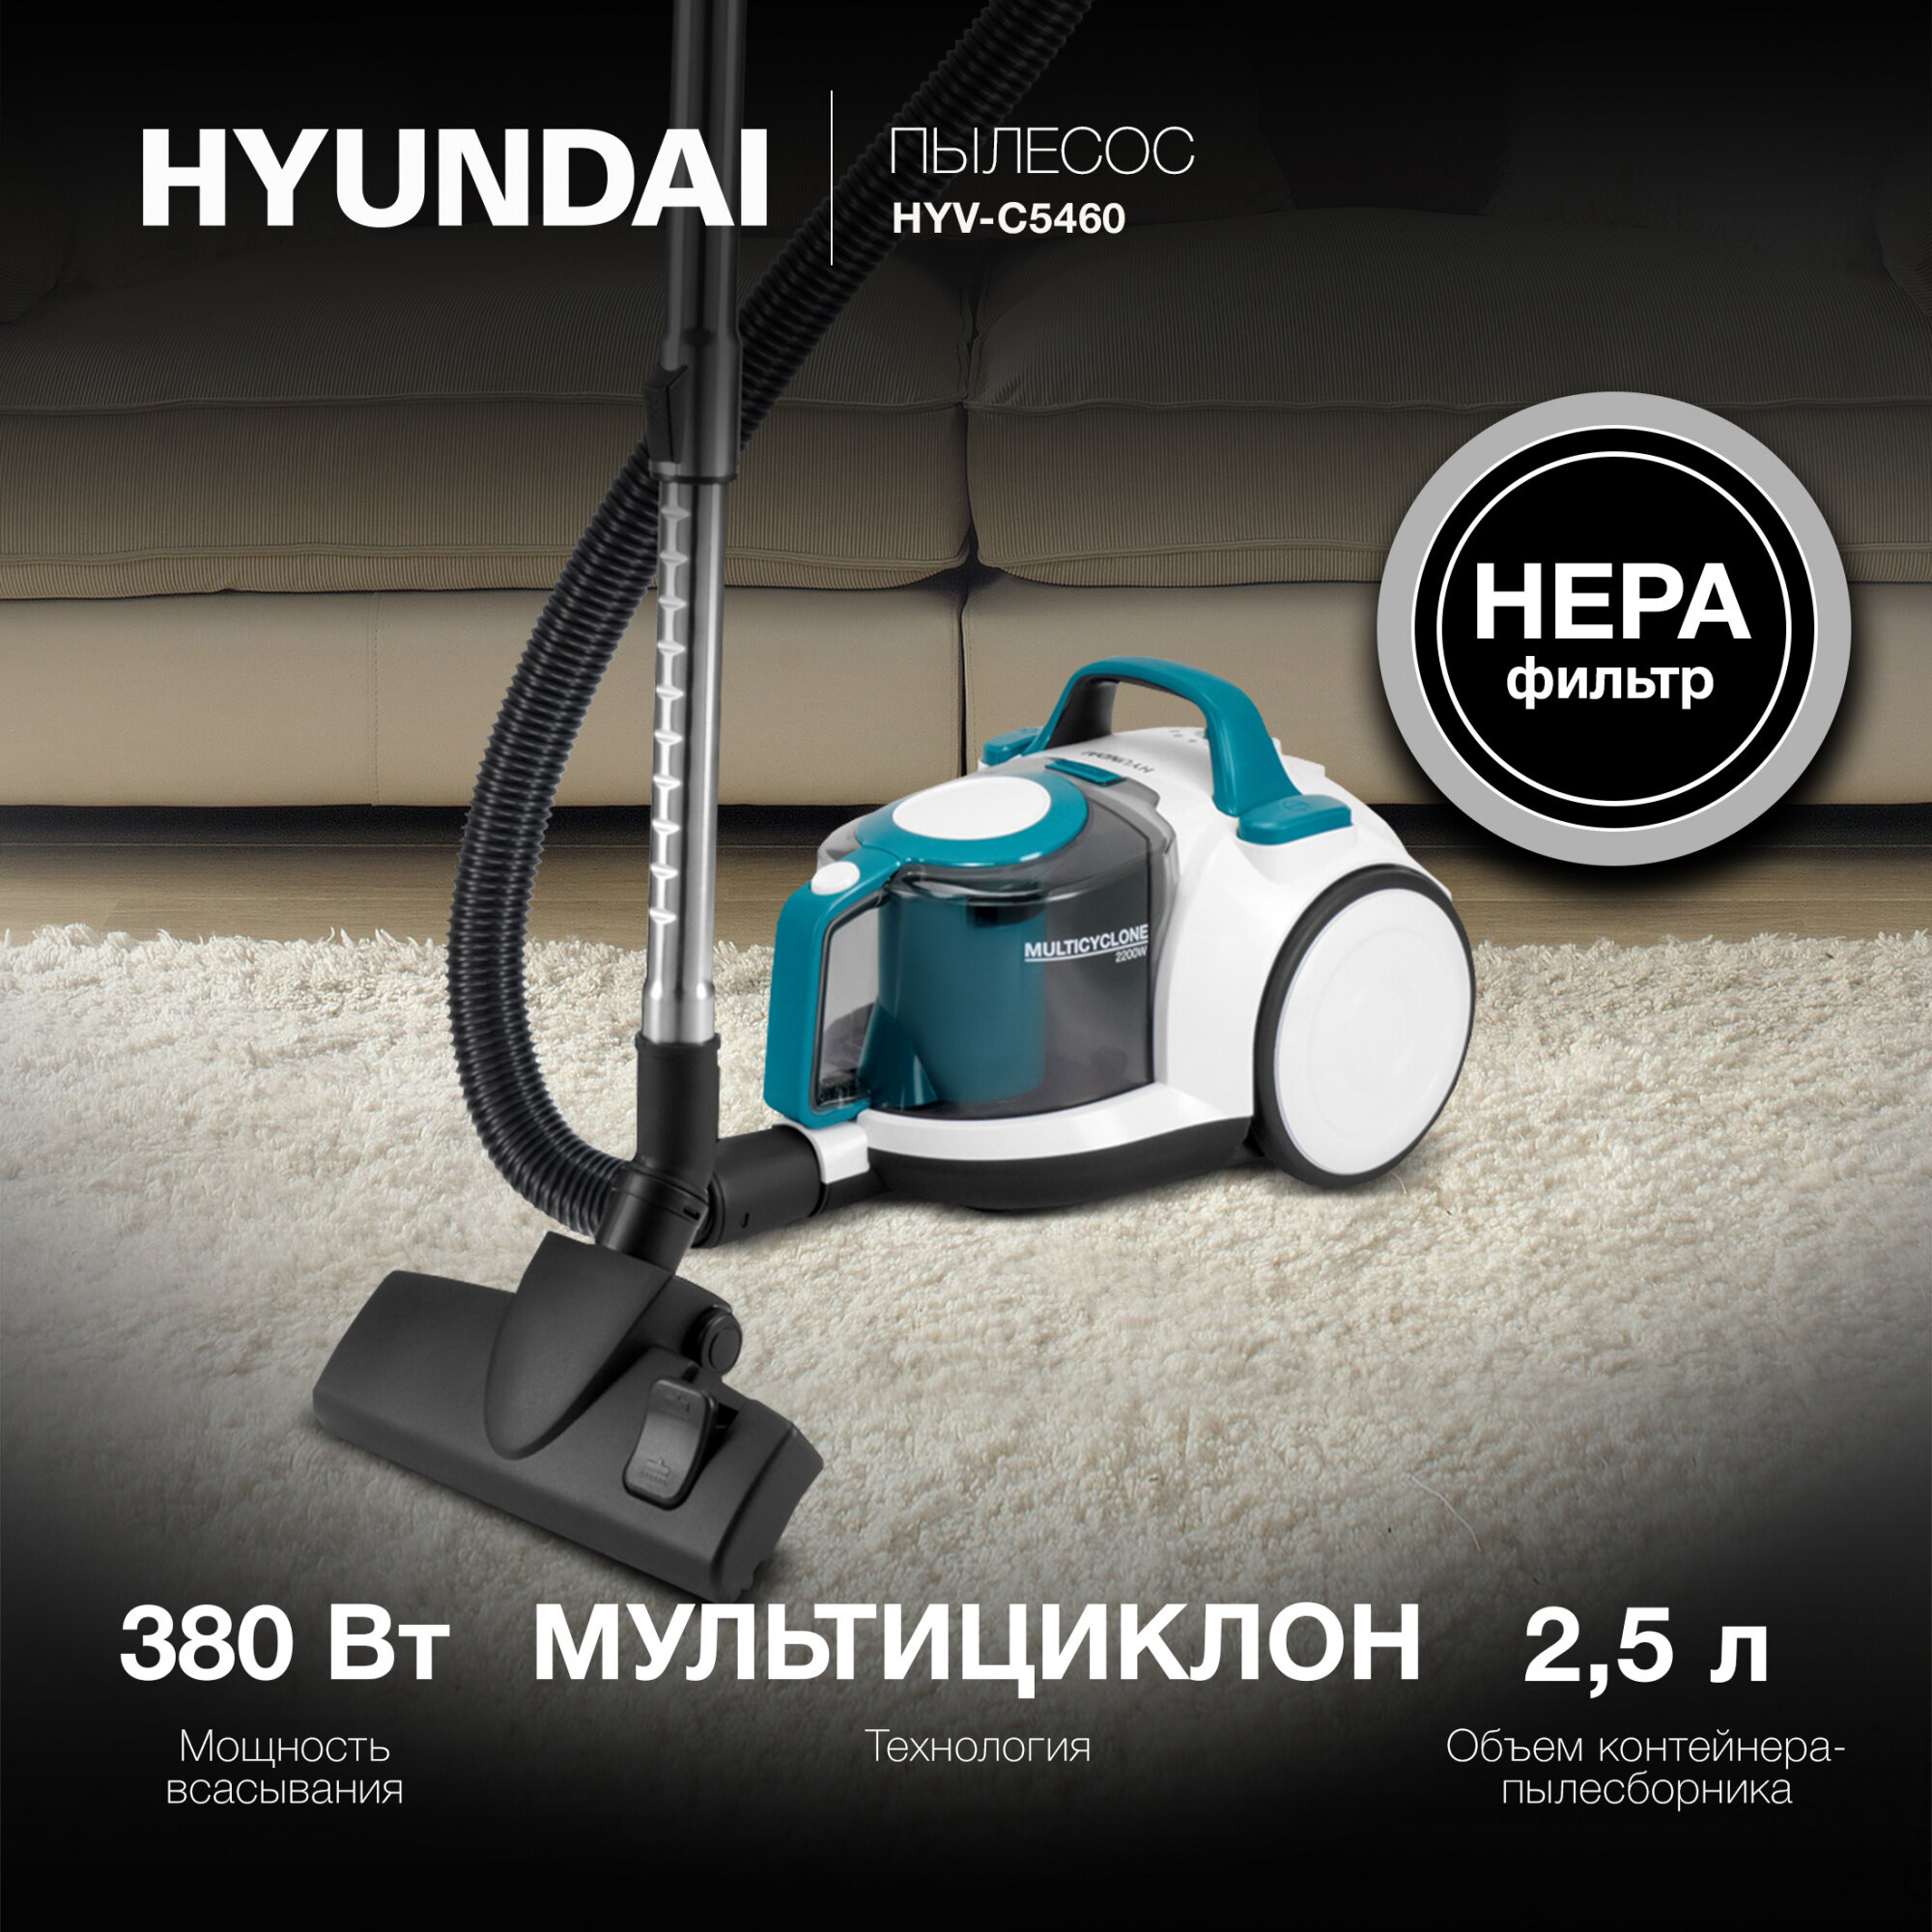 Пылесос Hyundai HYV-C5460 белый/бирюзовый - фото №4